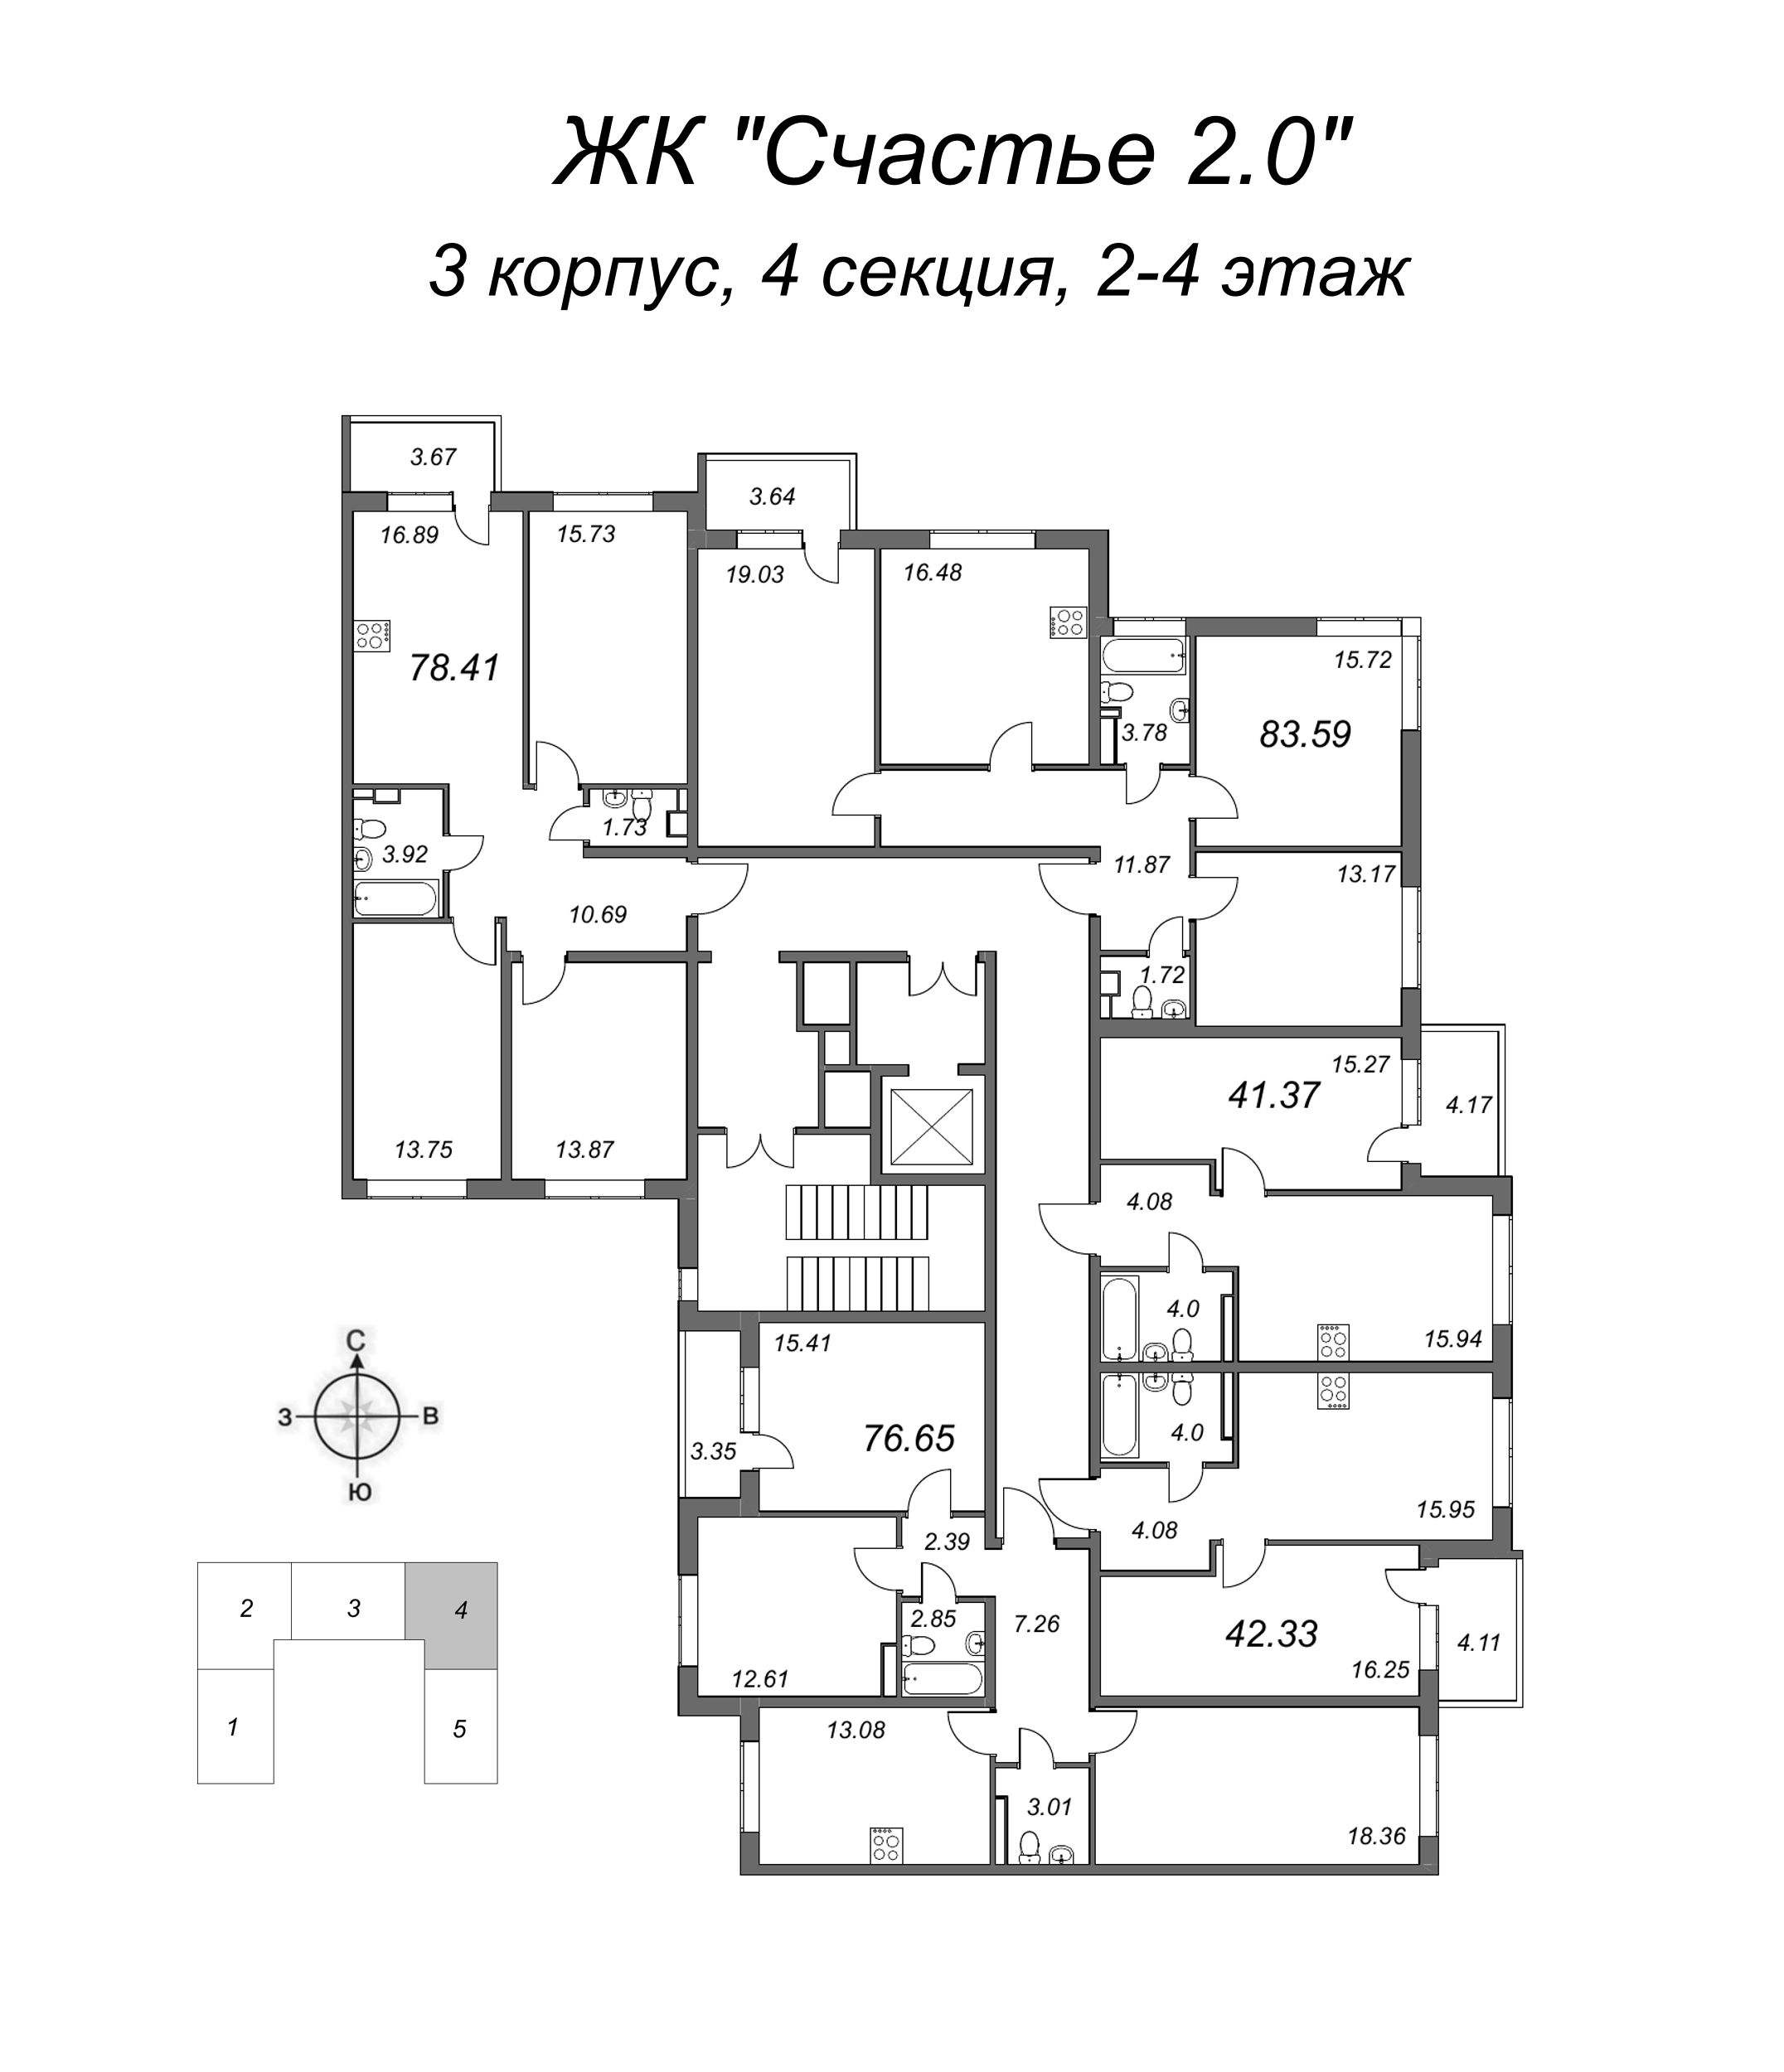 3-комнатная квартира, 79.5 м² в ЖК "Счастье 2.0" - планировка этажа